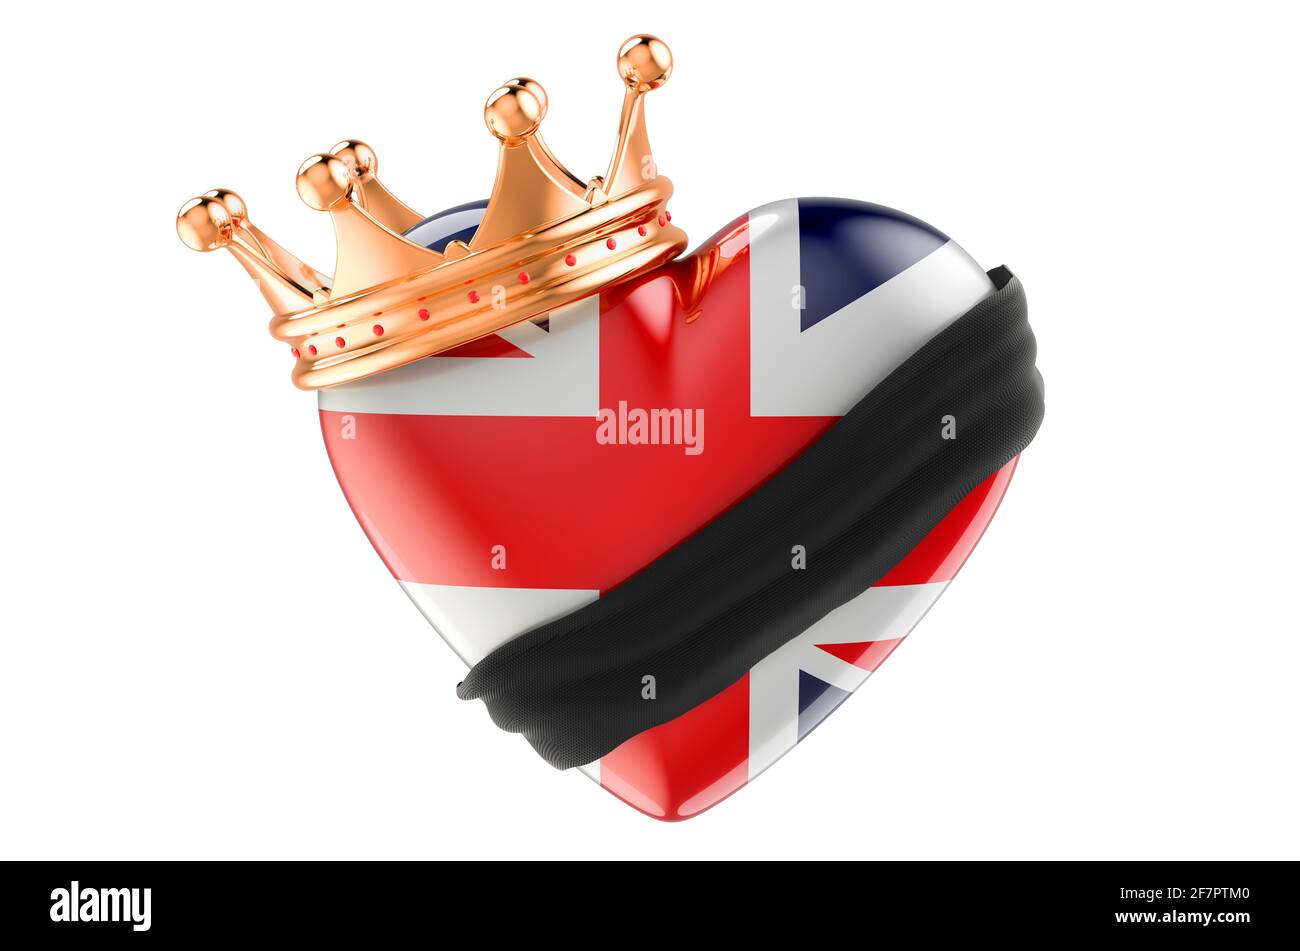 Trauer im britischen Konzept. Britisches Herz mit schwarzem Band und goldener Krone. 3D-Rendering auf weißem Hintergrund isoliert Stockfoto